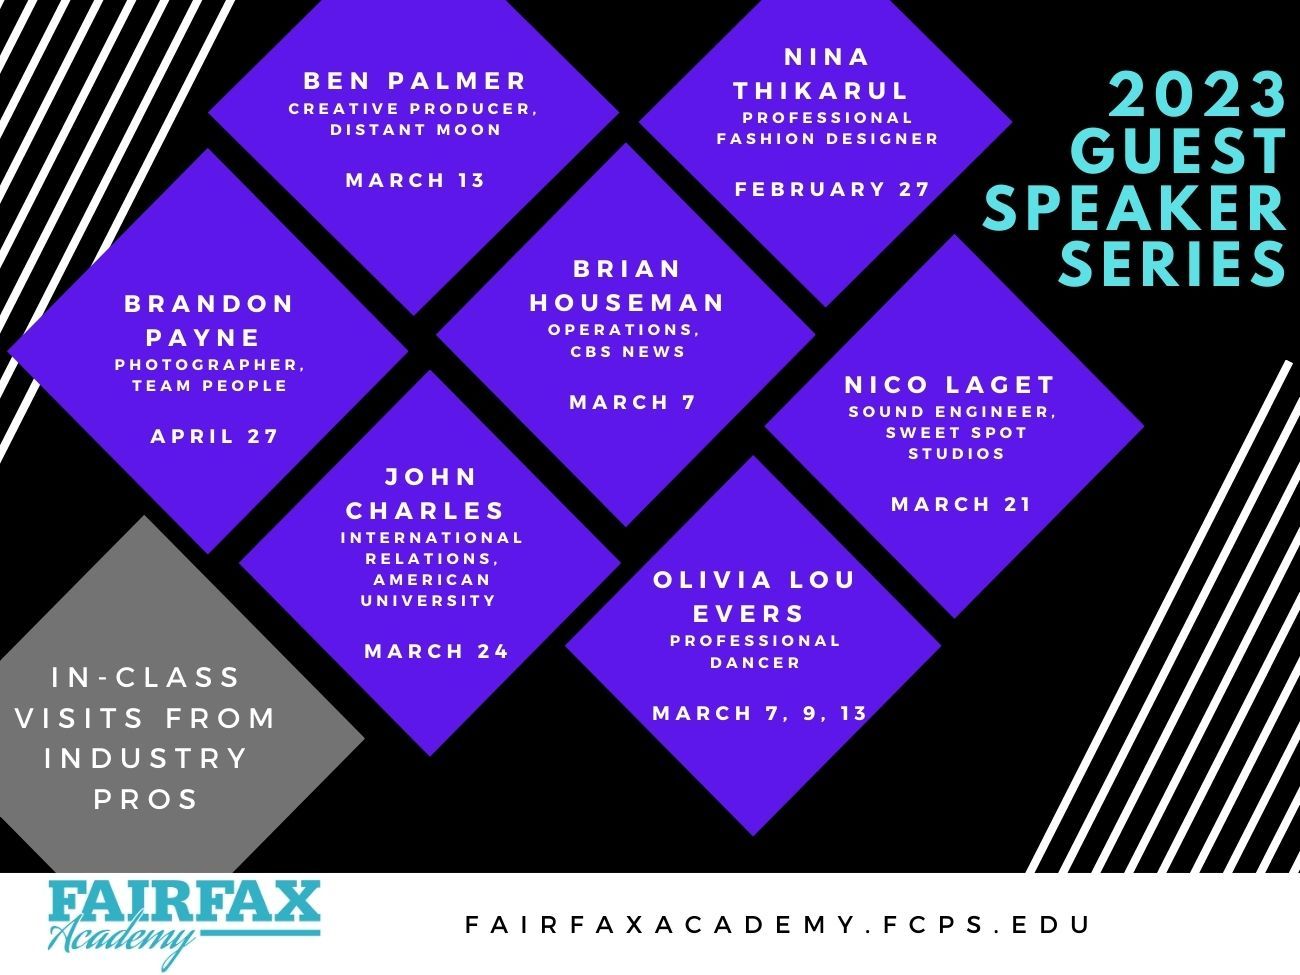 2023 Guest Speaker Series - Fairfax Academy